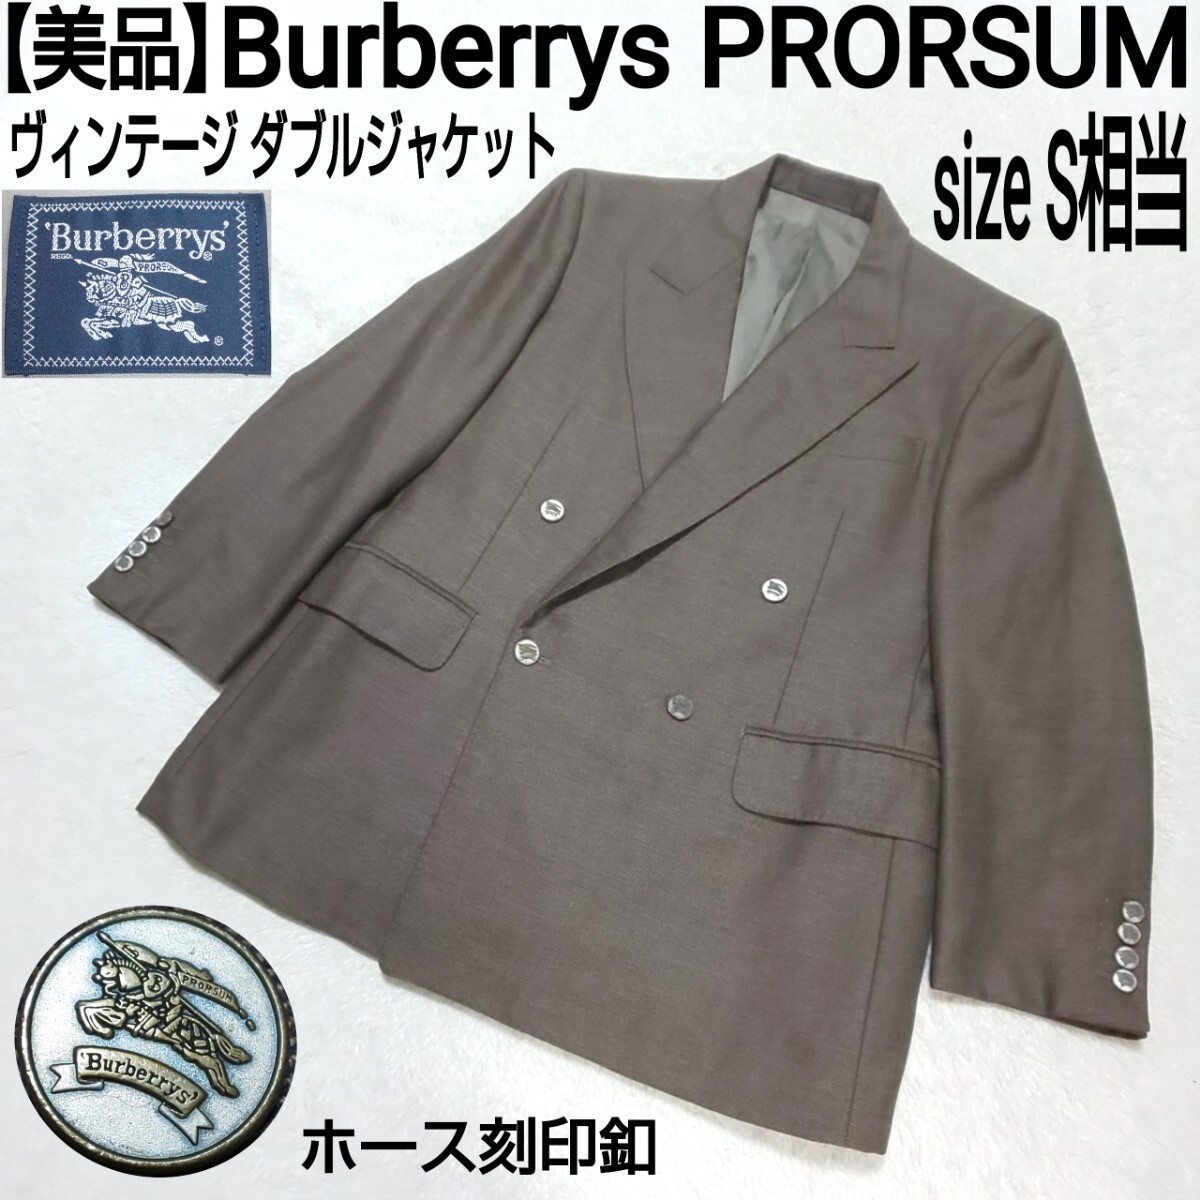 【美品】Burberrys PRORSUM バーバリープローサム ヴィンテージ ダブルジャケット テーラードジャケット ホース刻印釦 ブラウン S相当の画像1